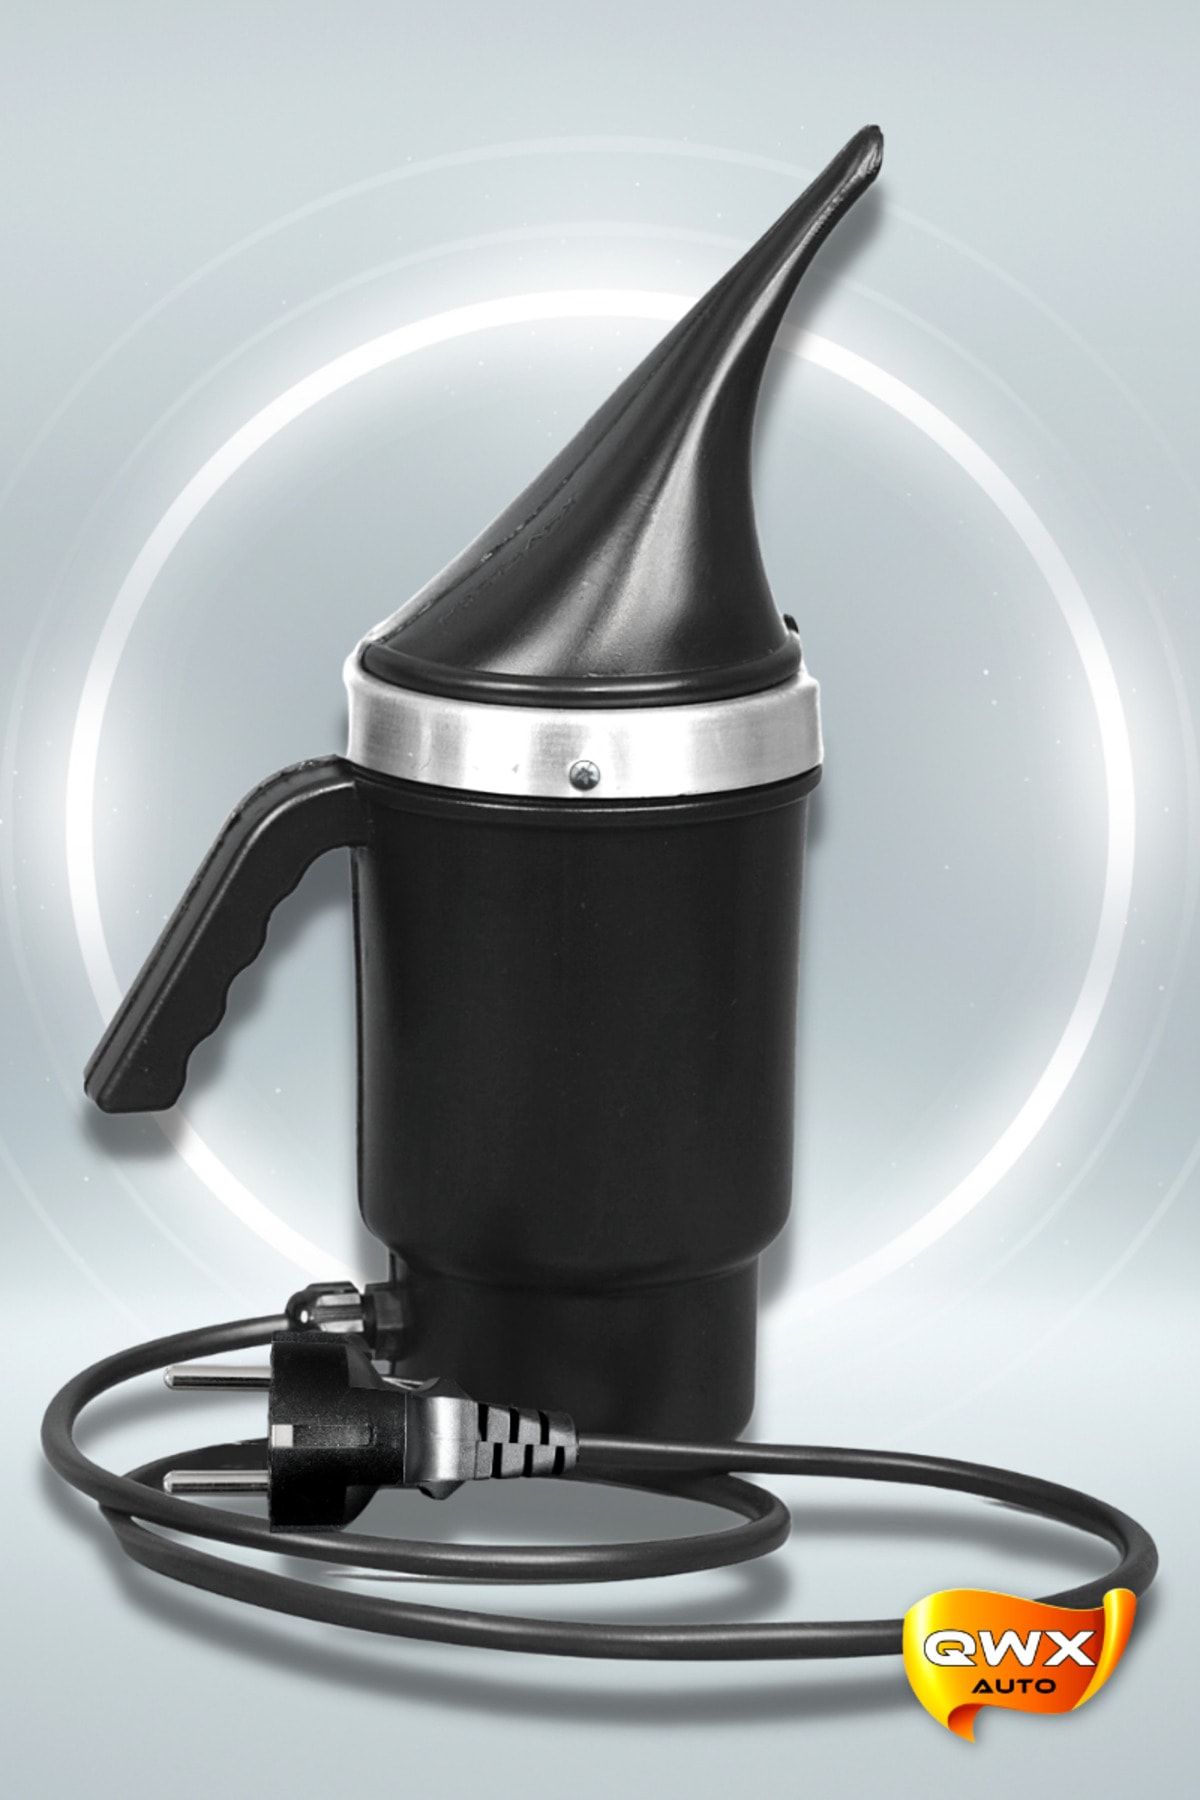 QWXAUTO Buharlı Far Temizleme Far Parlatma Kloroform Isıtıcı Makinesi Seti Siyah